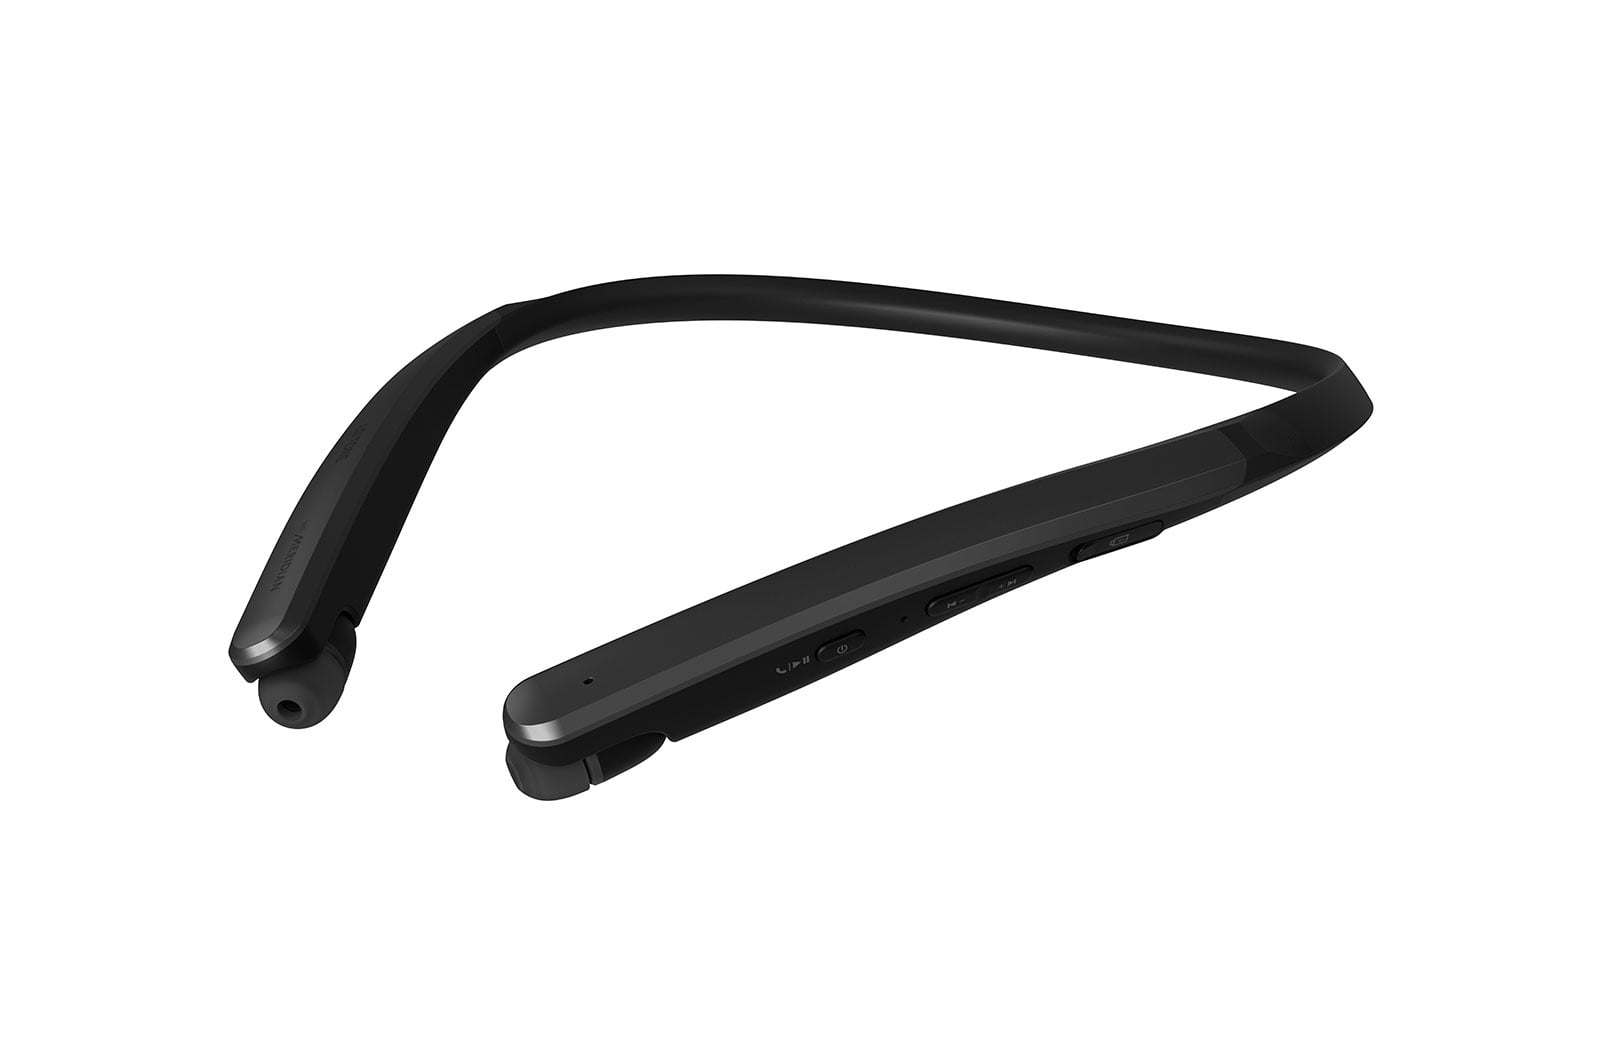 LG Tone Flex XL7 Bluetooth Wireless Stereo Headset HBS-XL7 